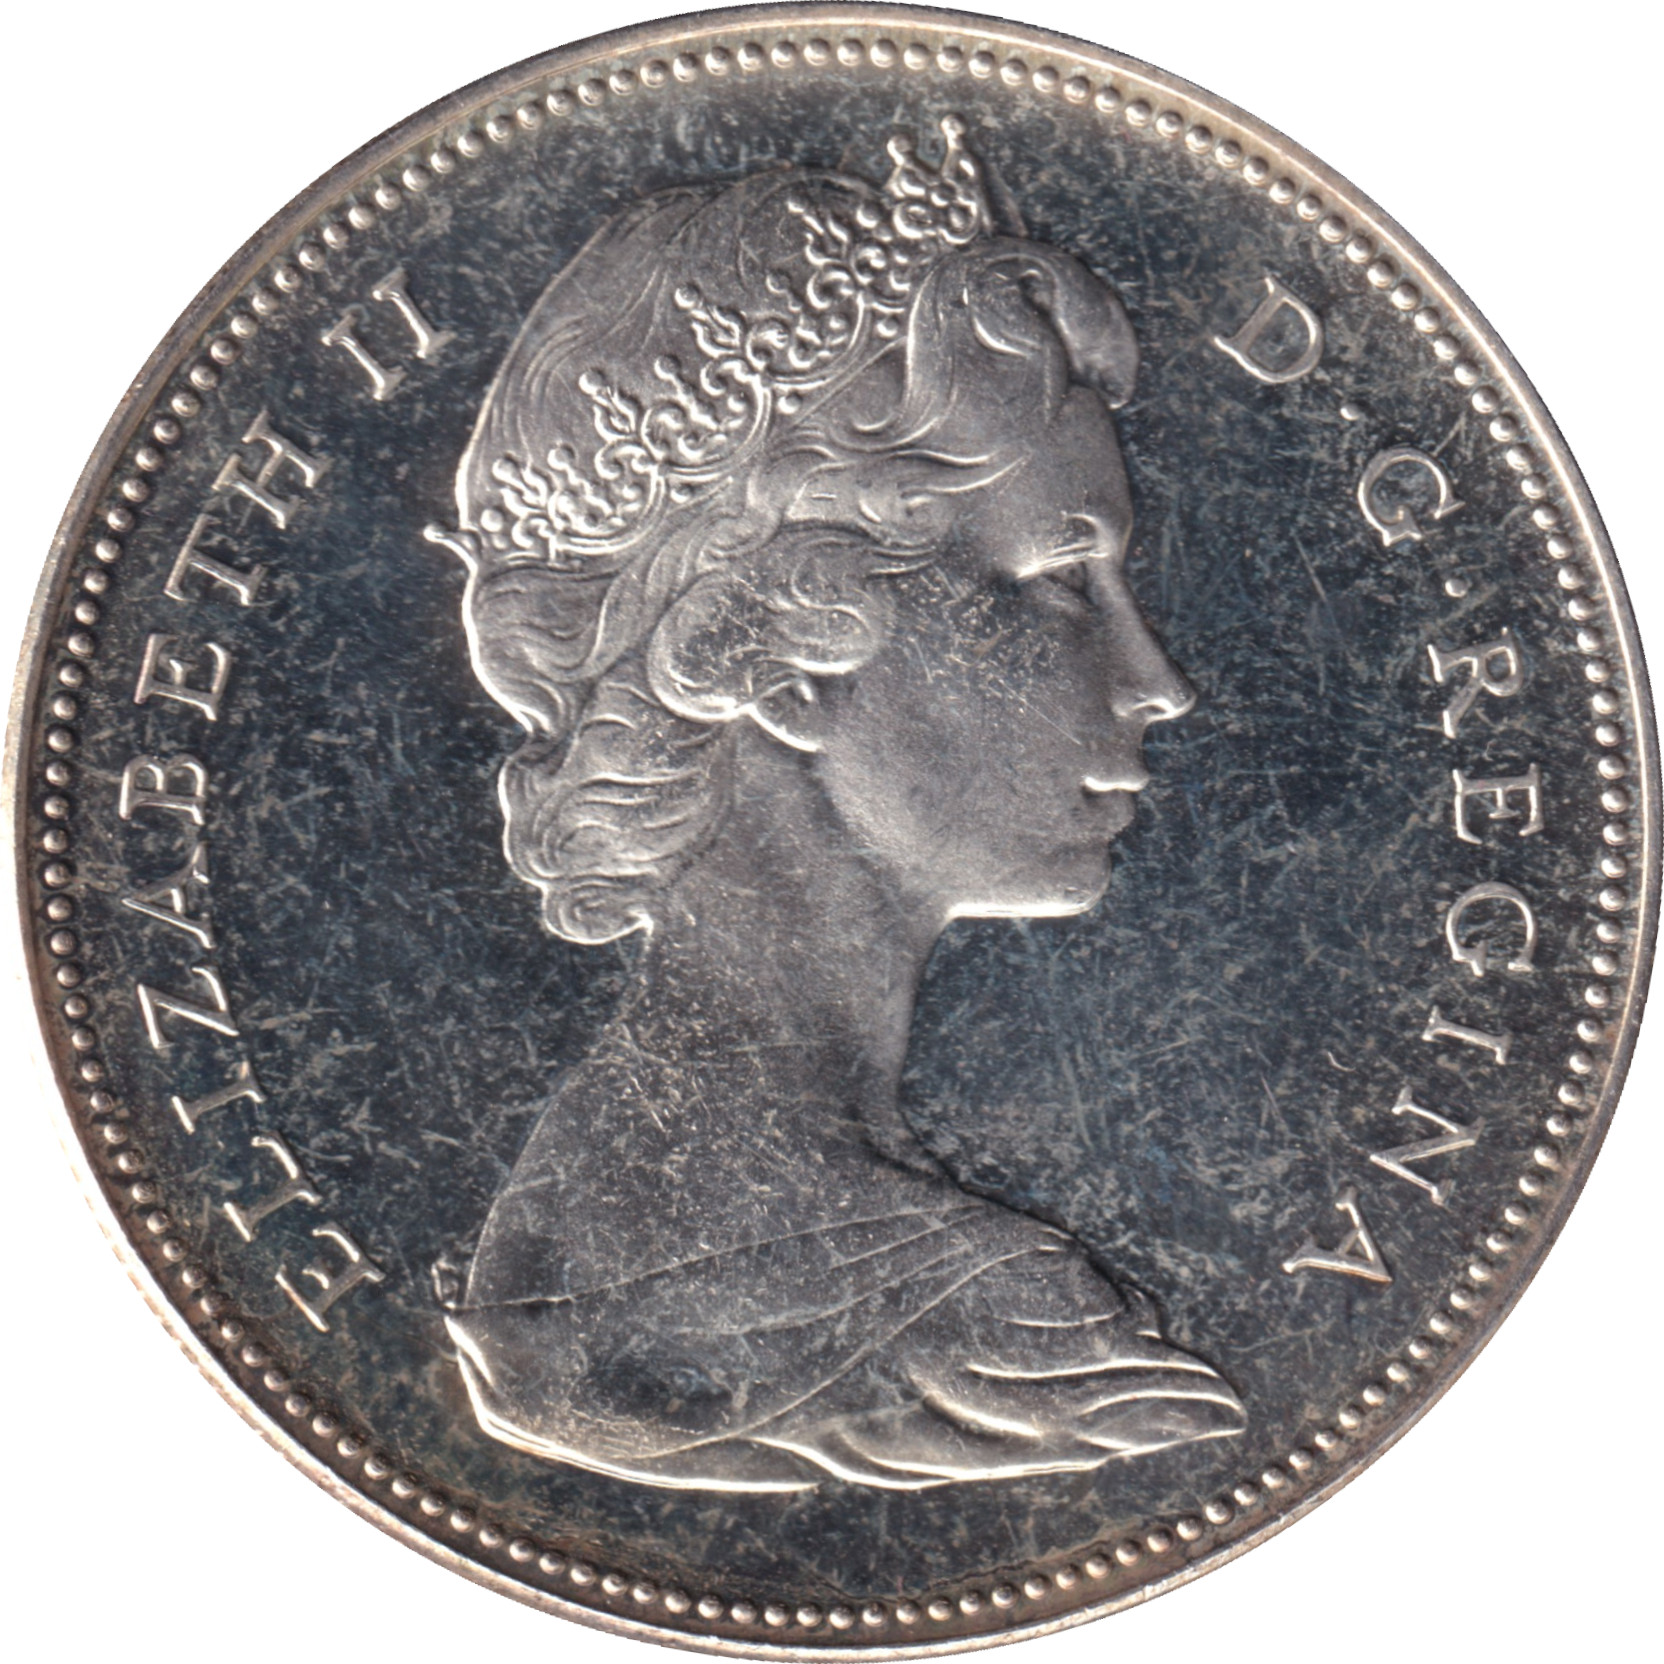 1 dollar - Confédération - 100 years